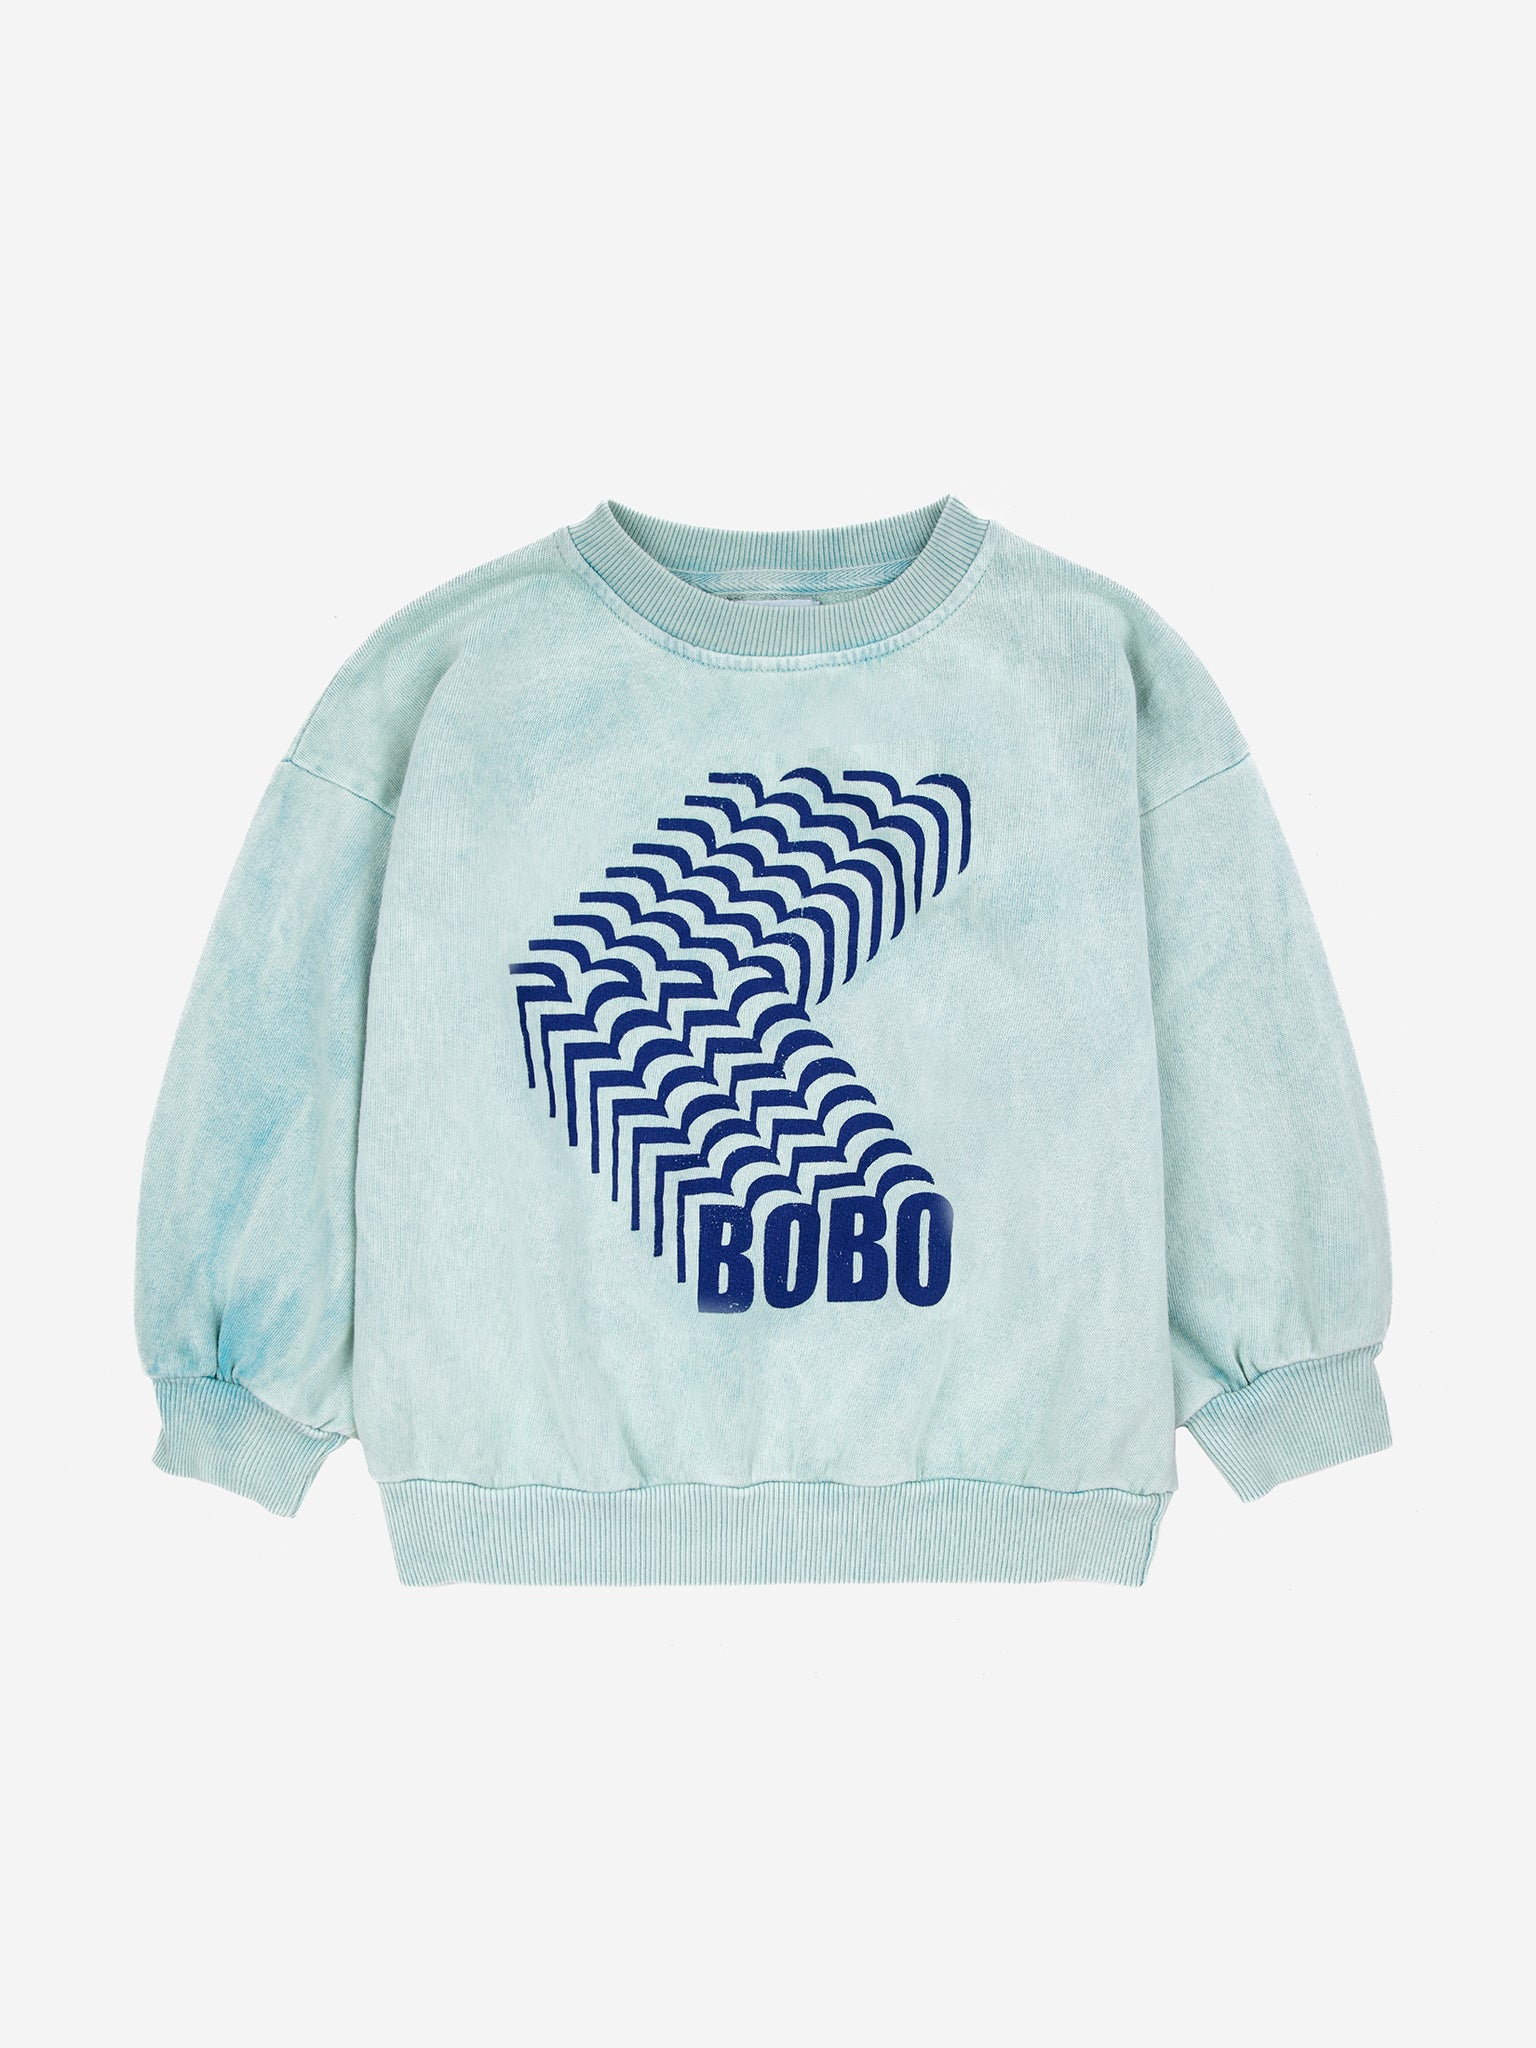 Bobo Shadow sweatshirt